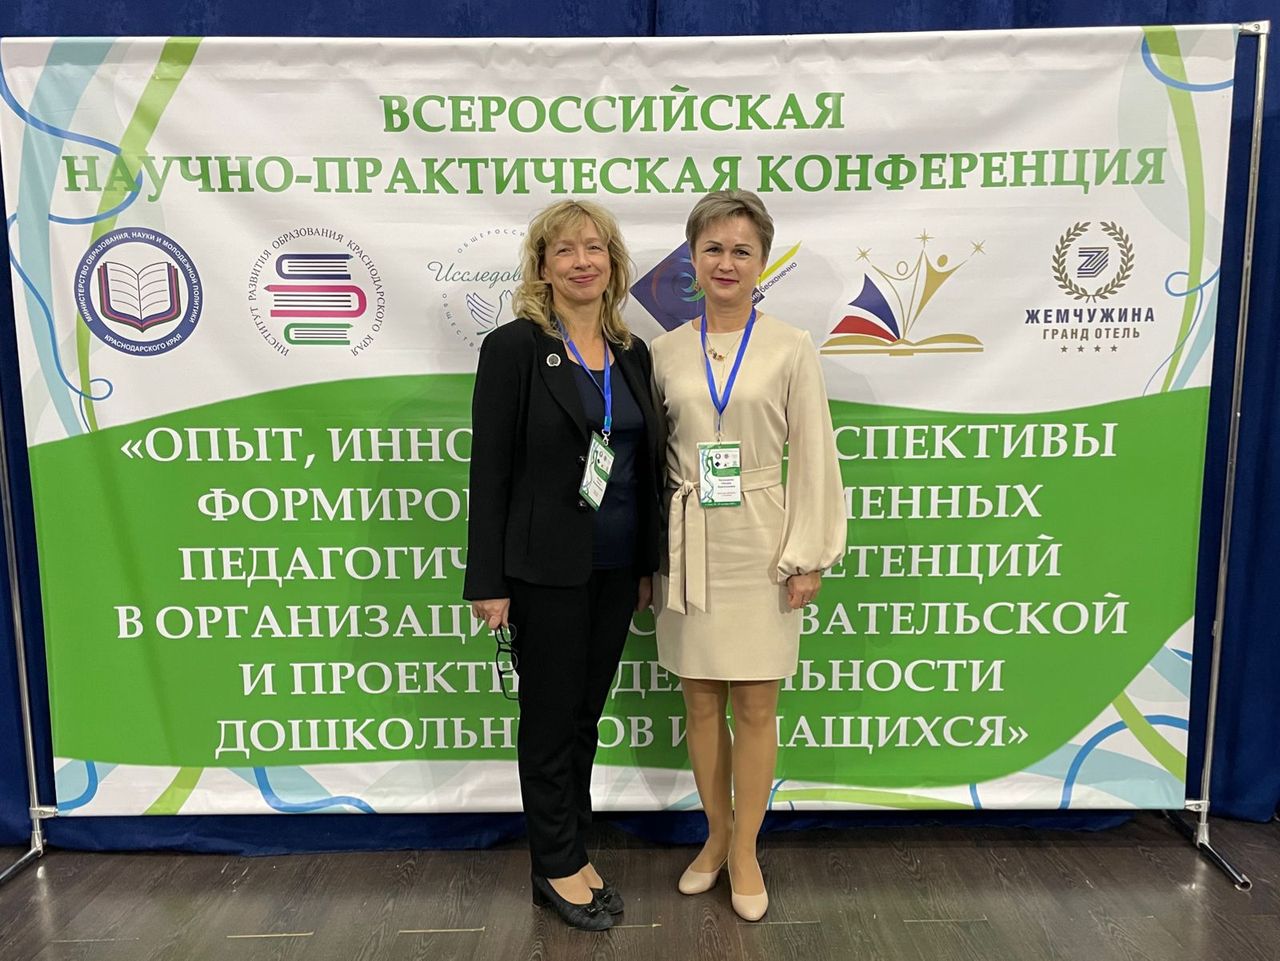 Всероссийская научно практическая конференция 2019